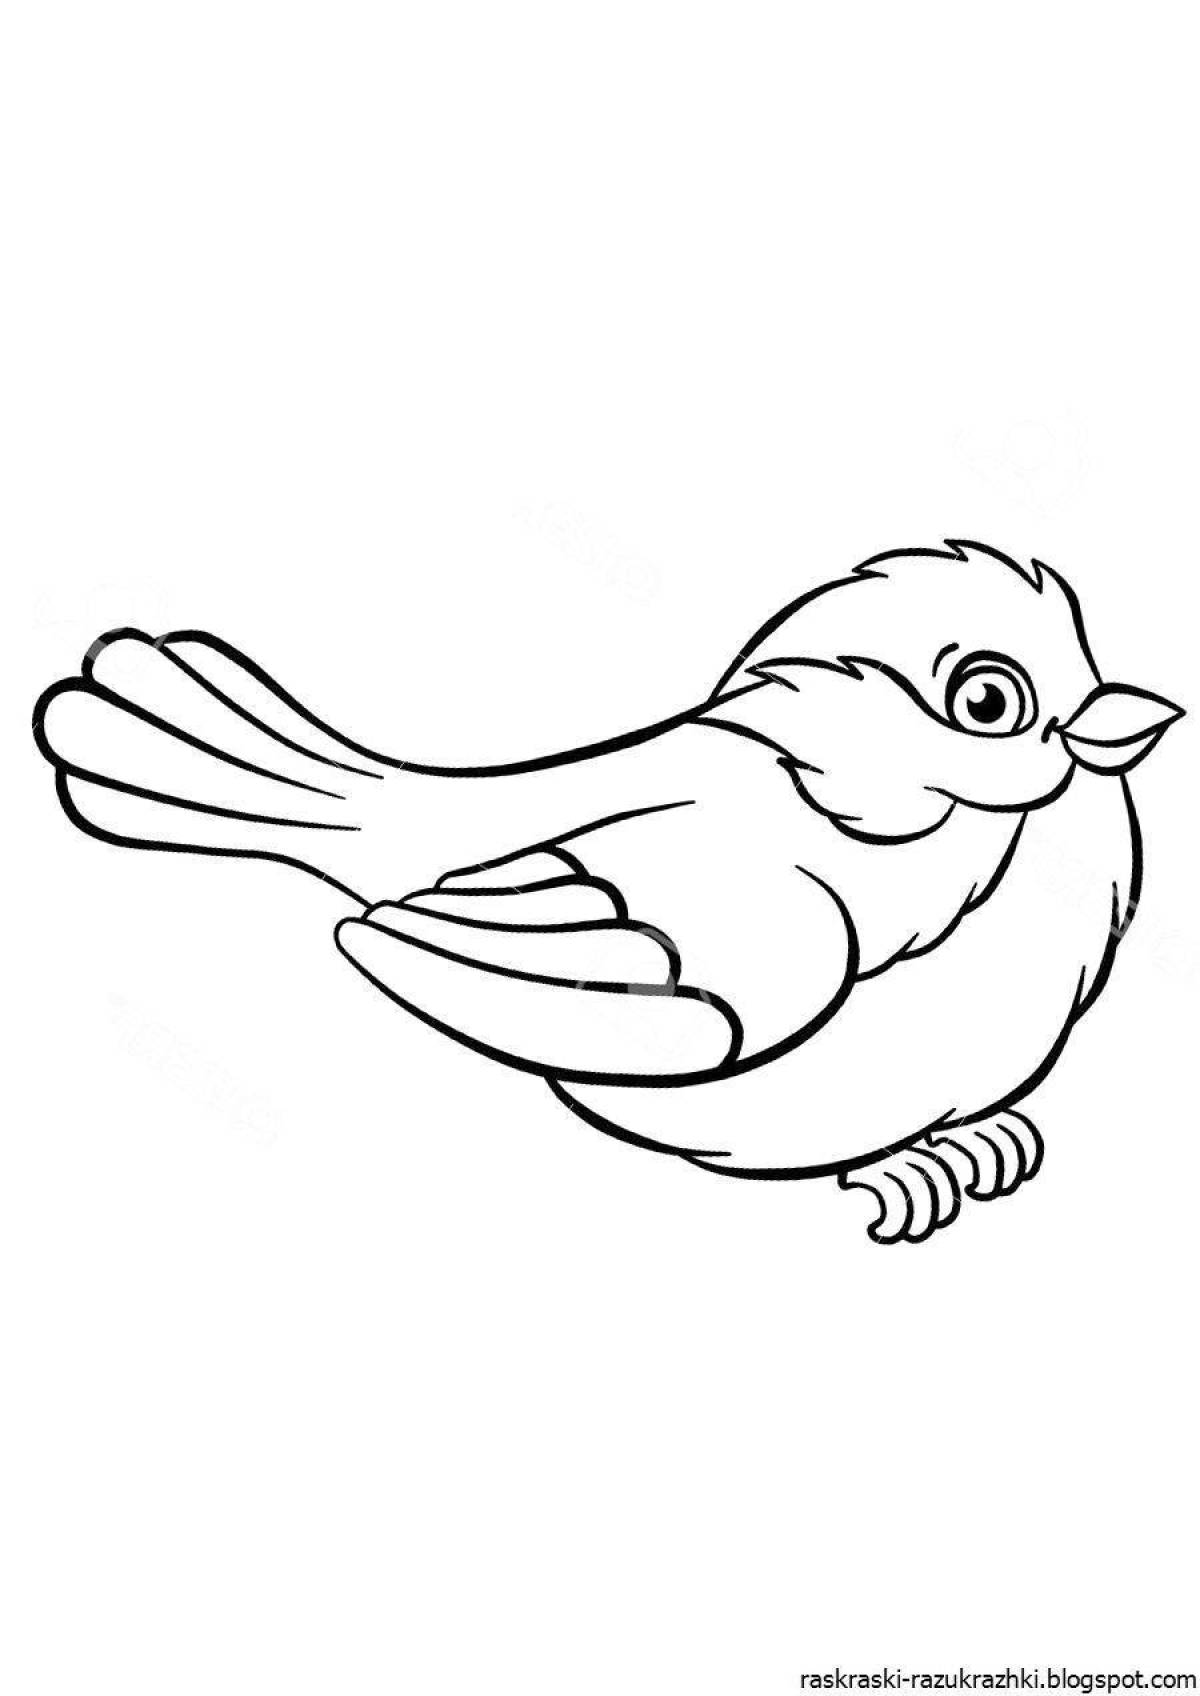 Птичка раскраска для детей распечатать